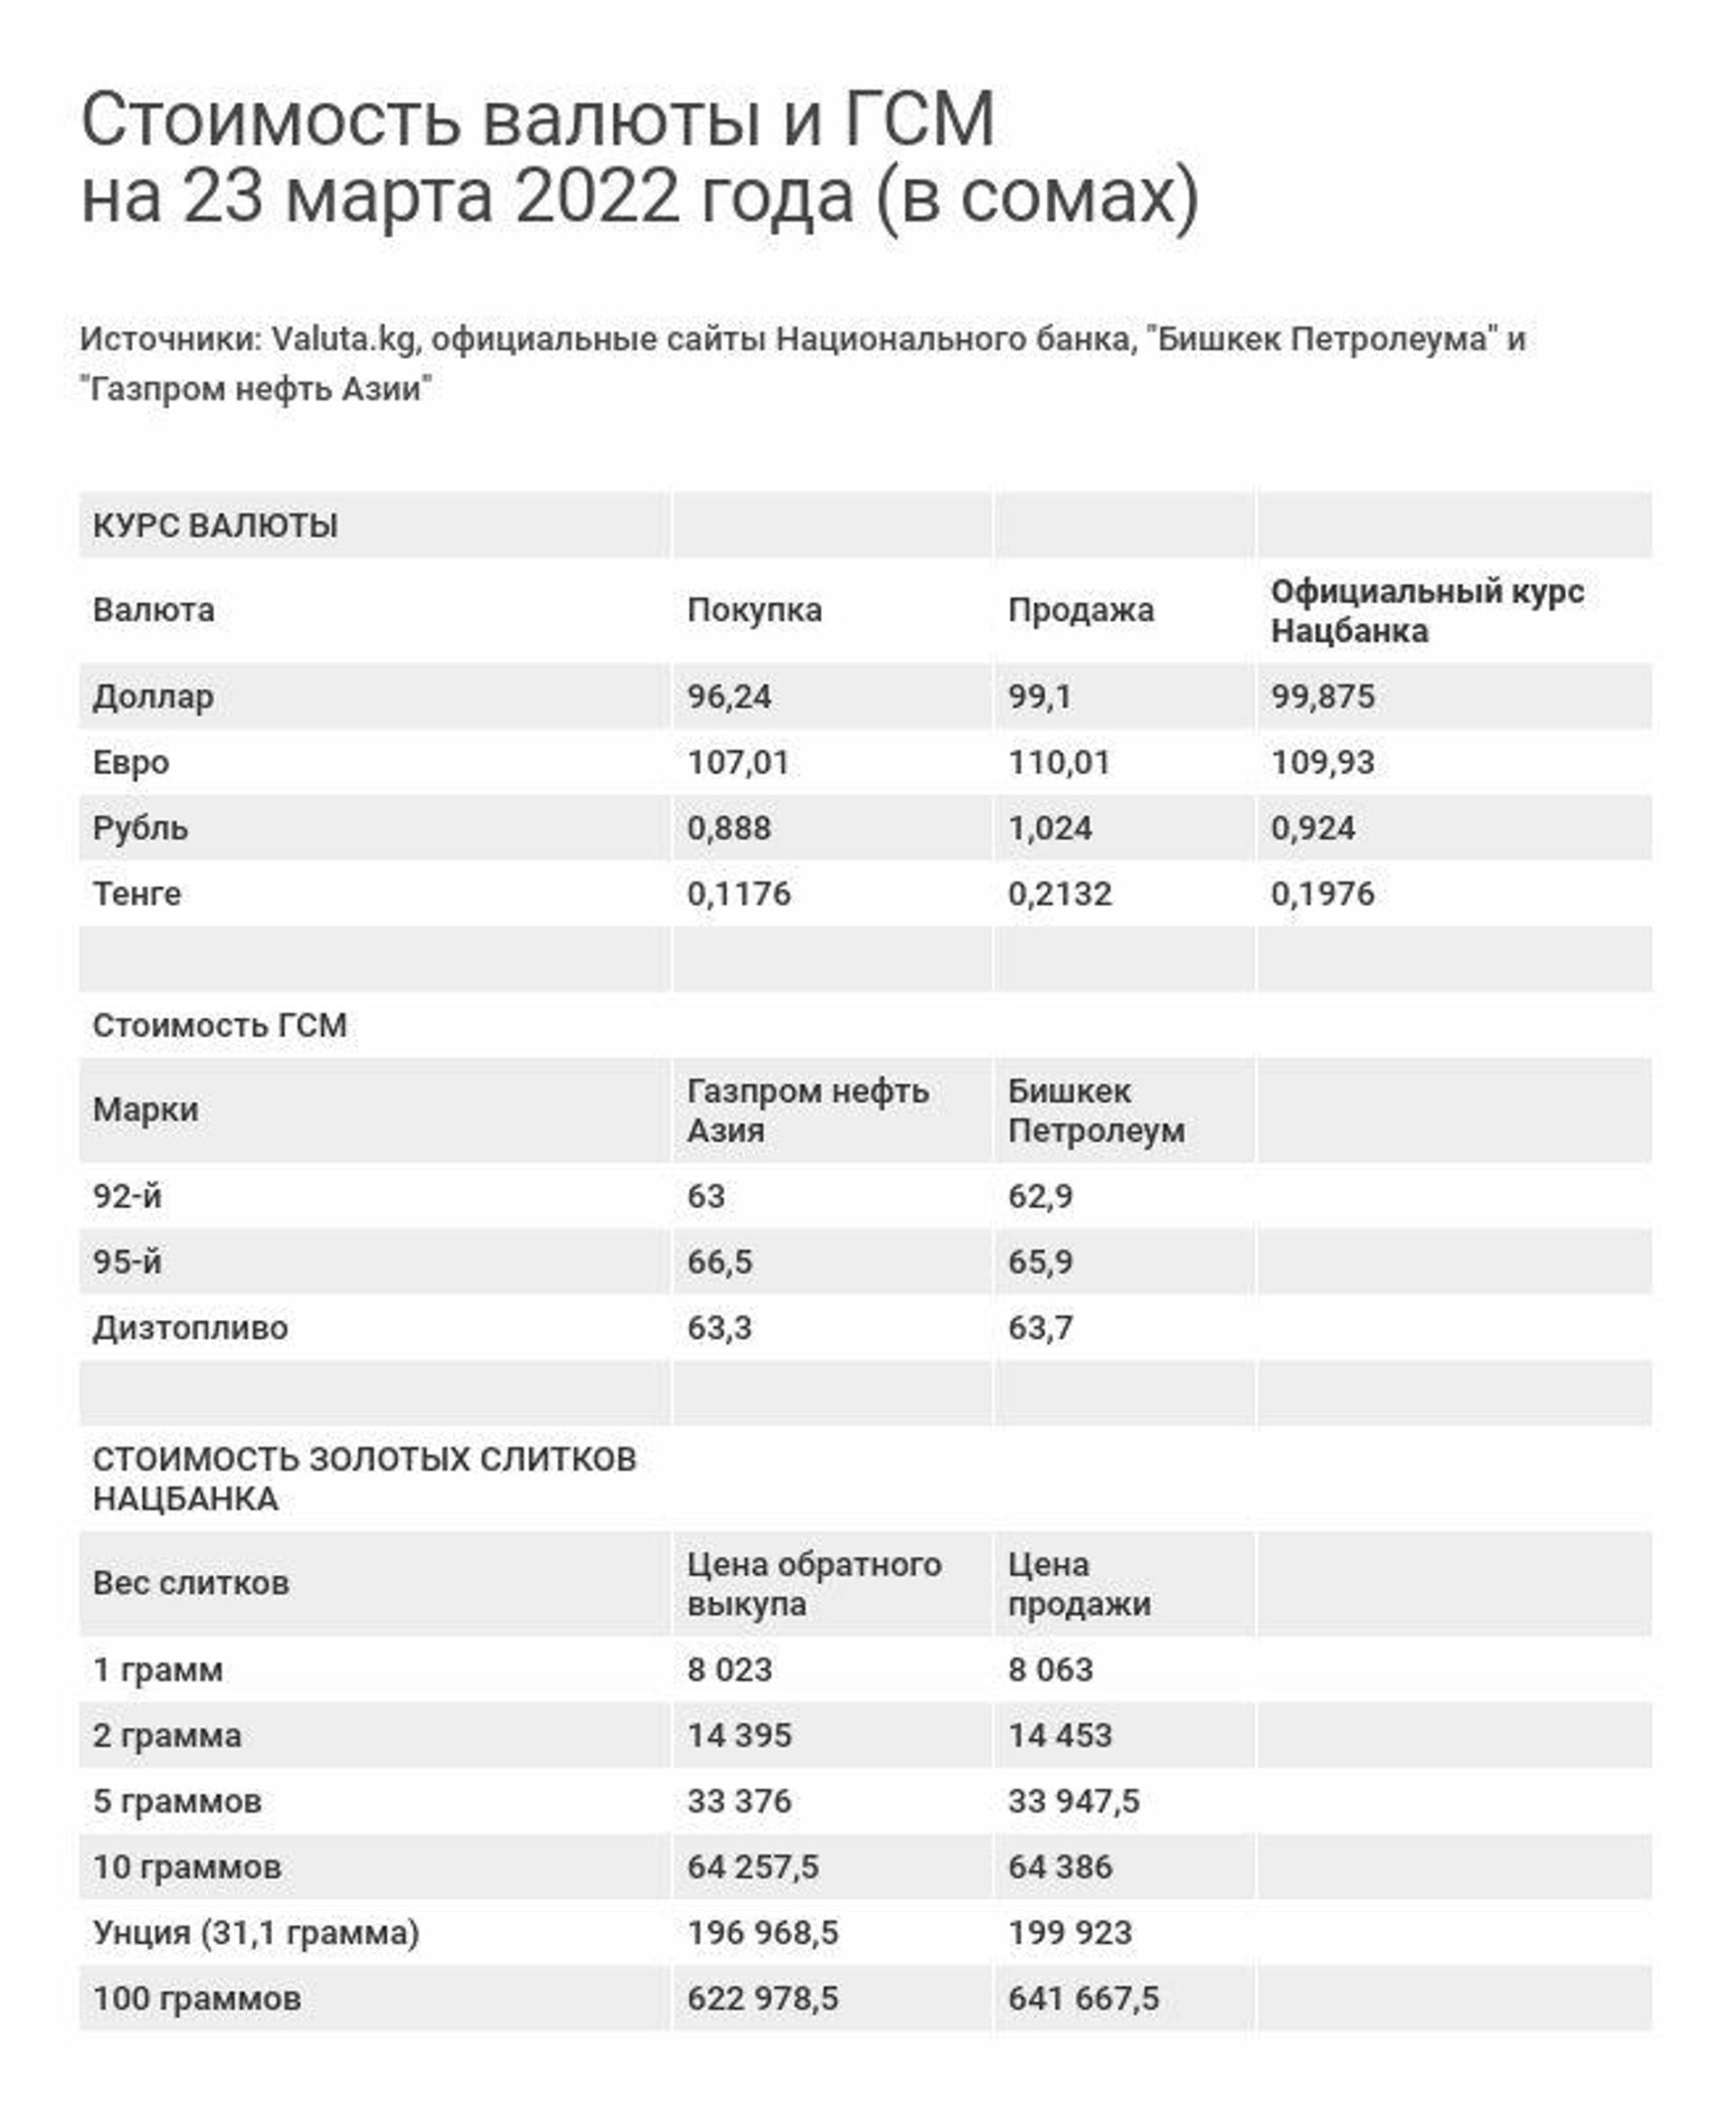 Стоимость валюты и ГСМ на 23 марта 2022 года - Sputnik Кыргызстан, 1920, 23.03.2022